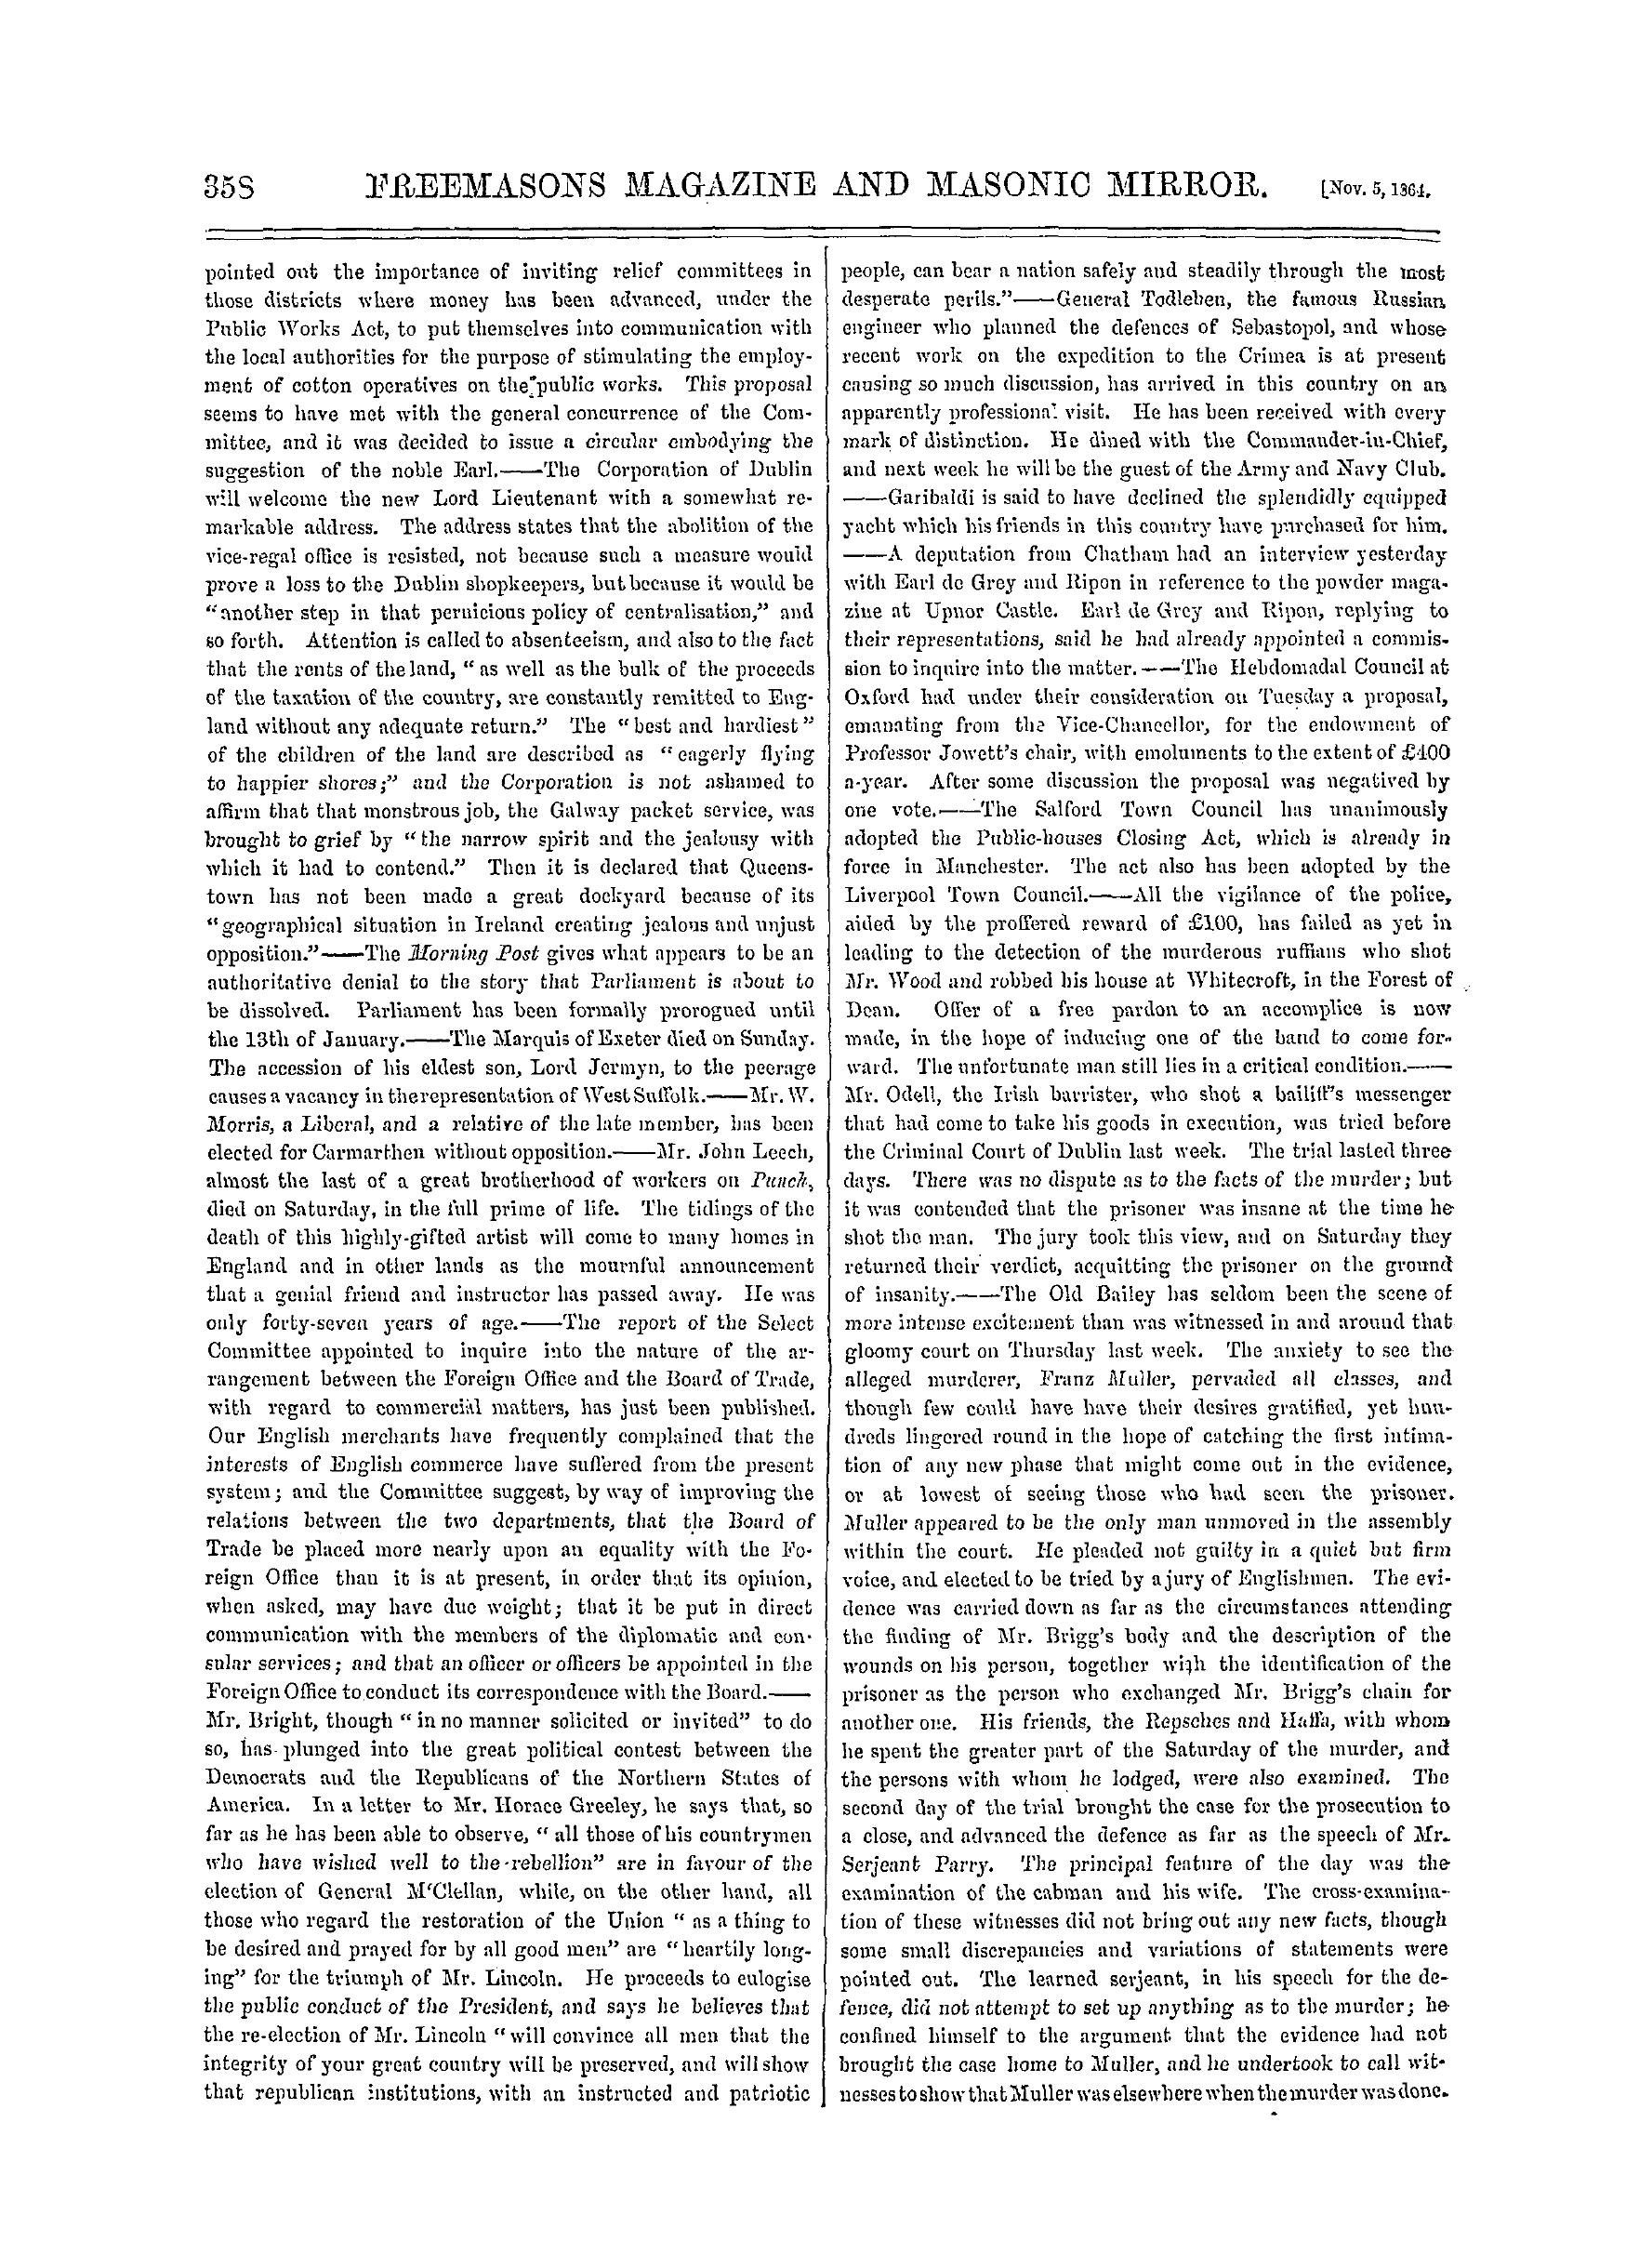 The Freemasons' Monthly Magazine: 1864-11-05: 18